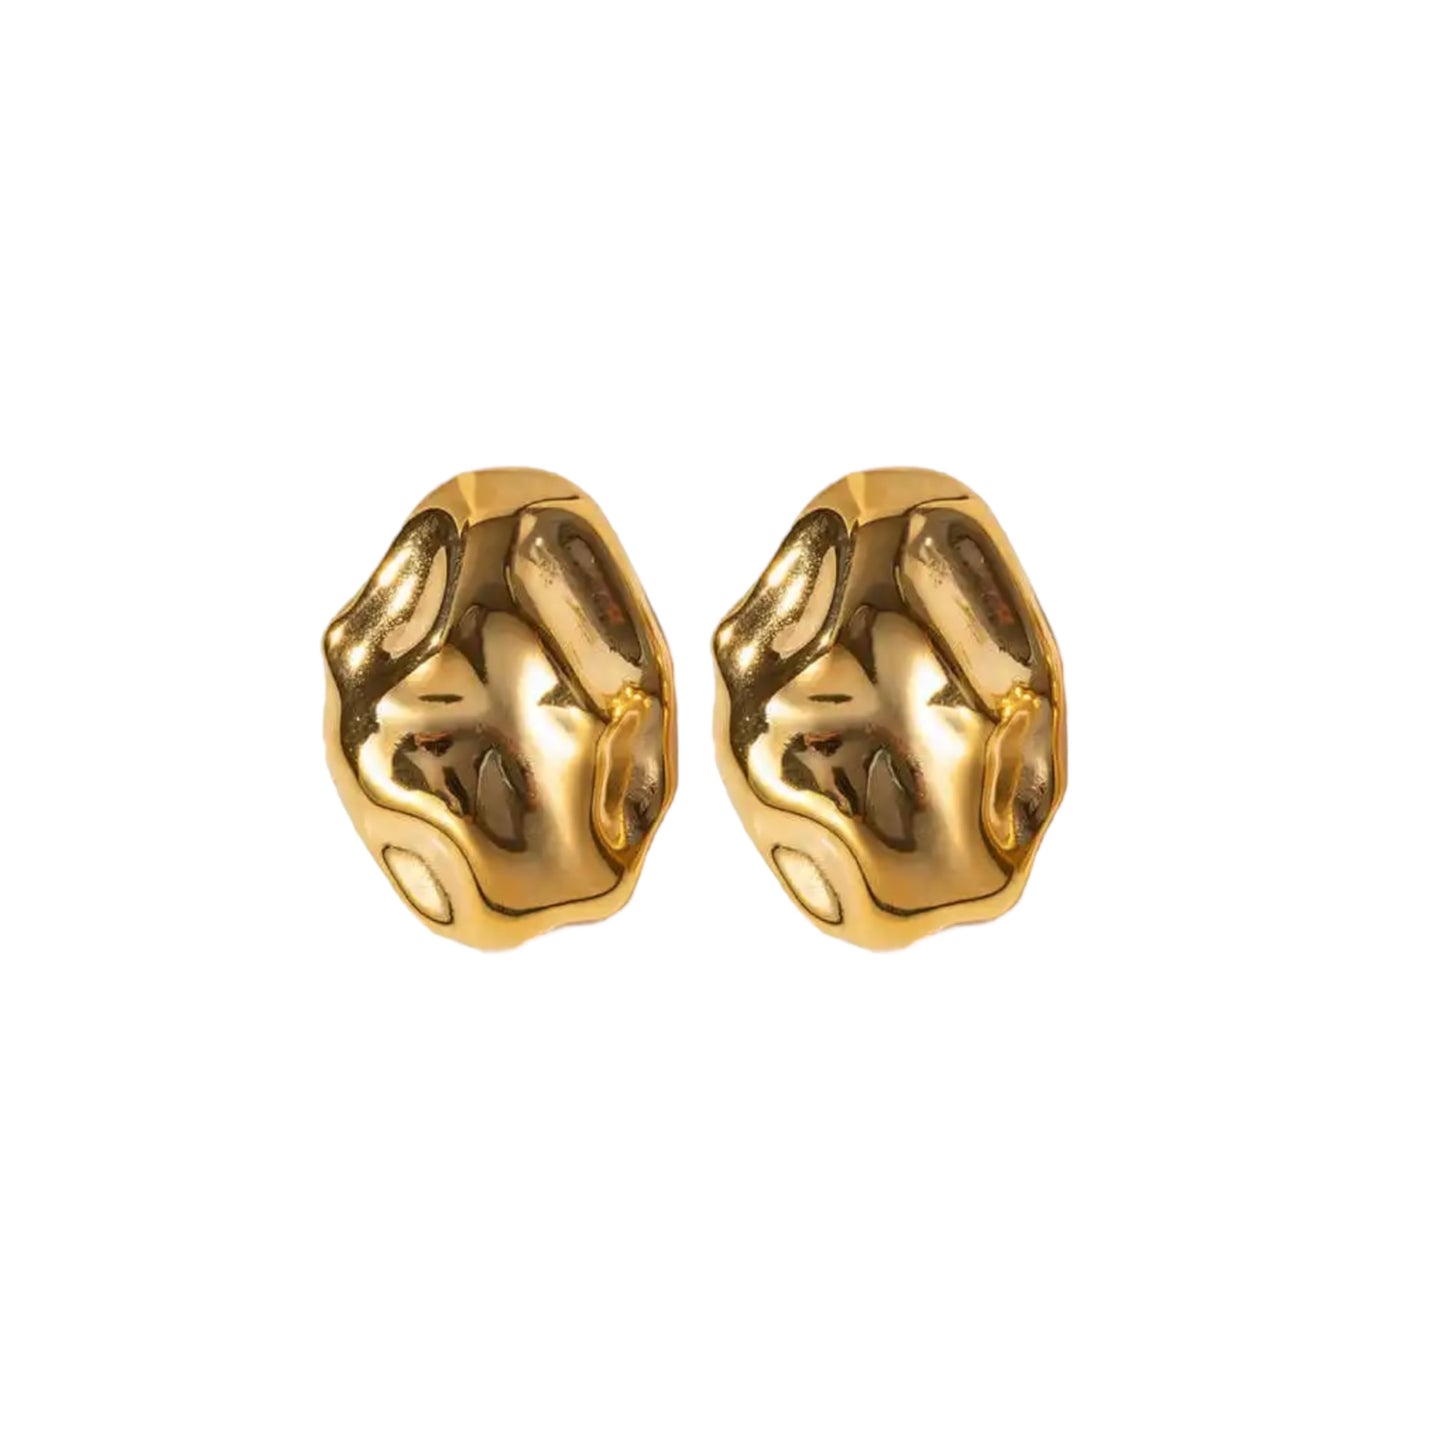 Golden Hibis earrings